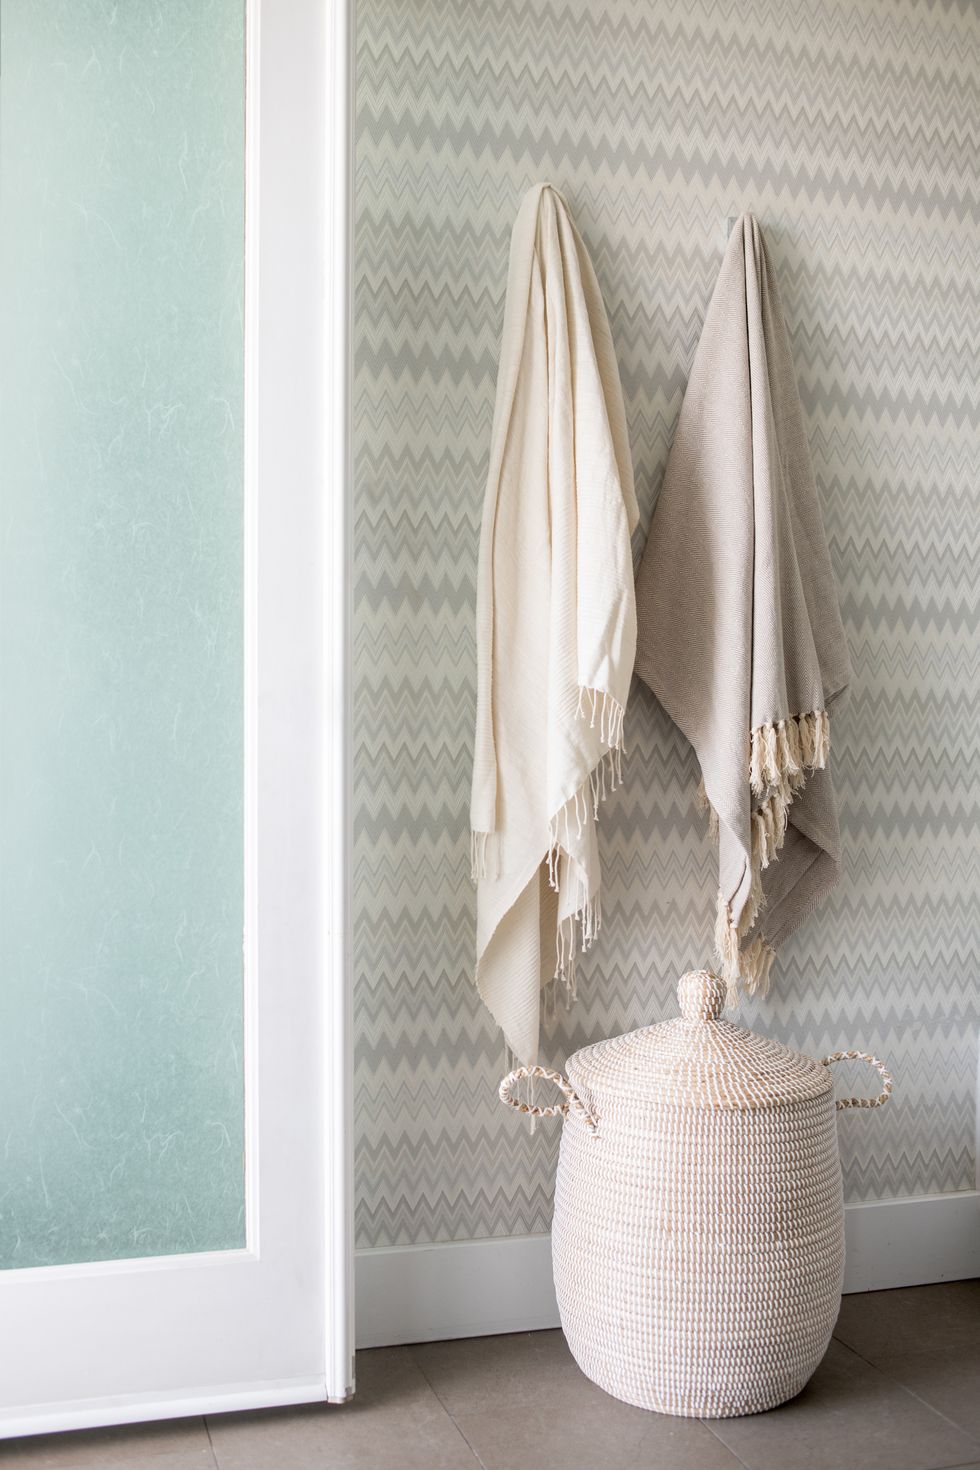 baño con papel pintado en zigzag y cesta de fibras